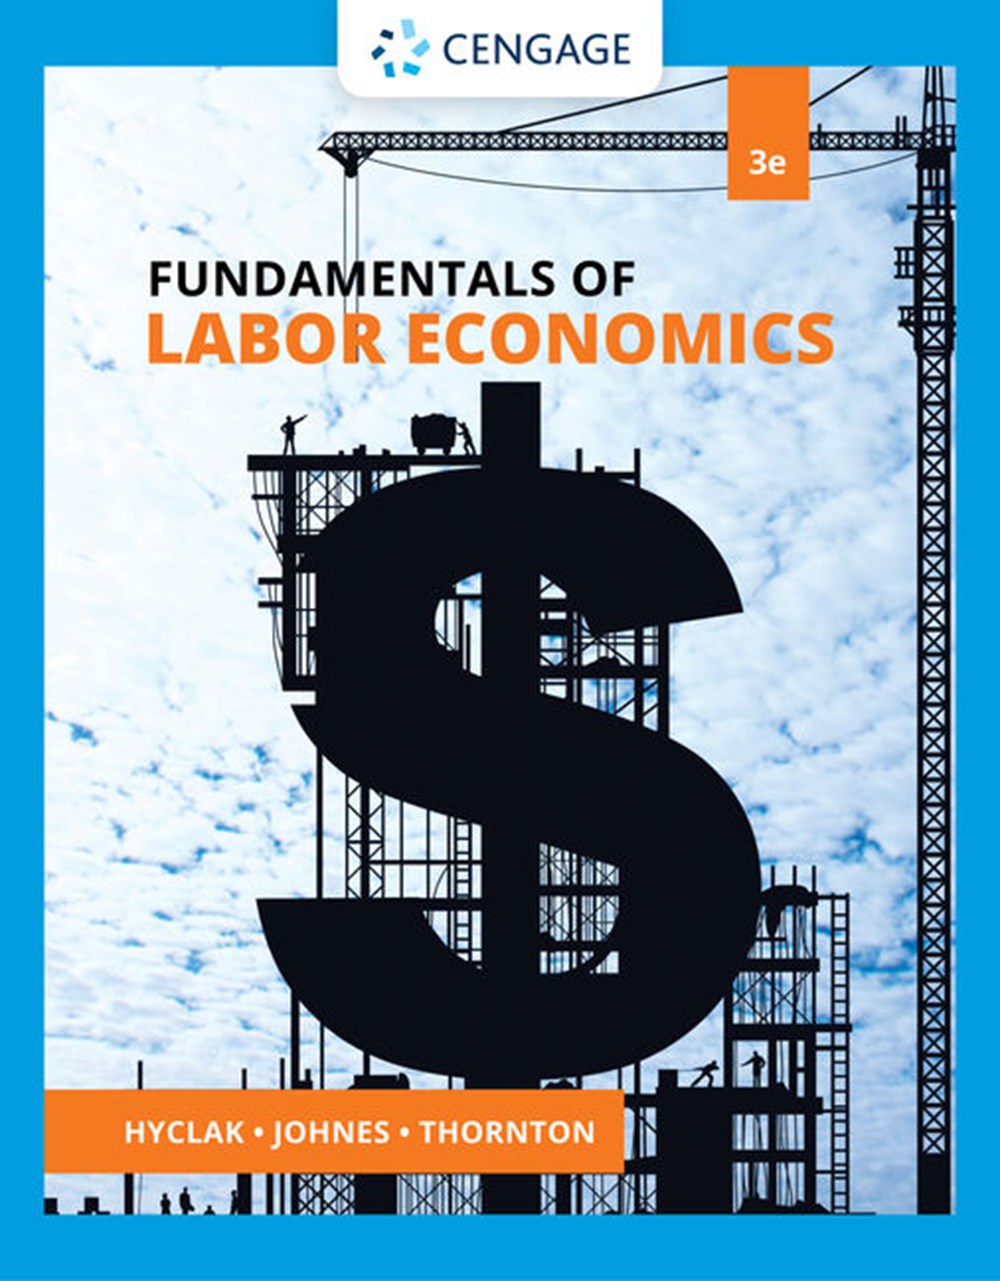 labor economics topics for research